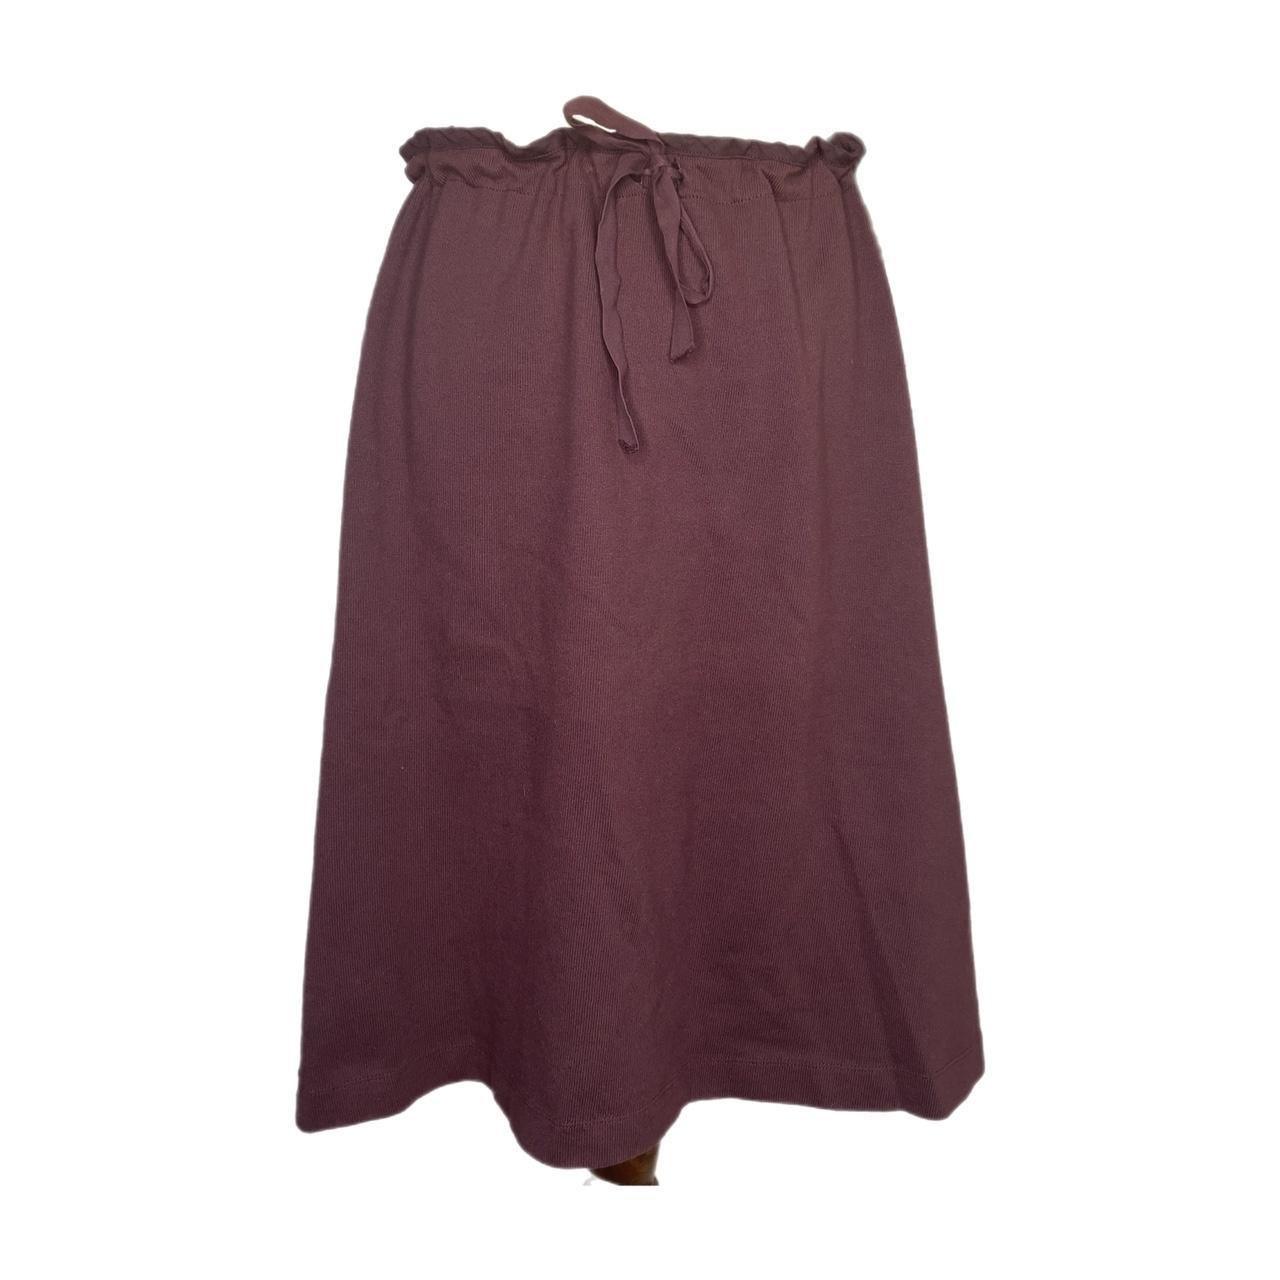 Miu Miu Maroon Midi skirt with a sinch waist Size:... - Depop